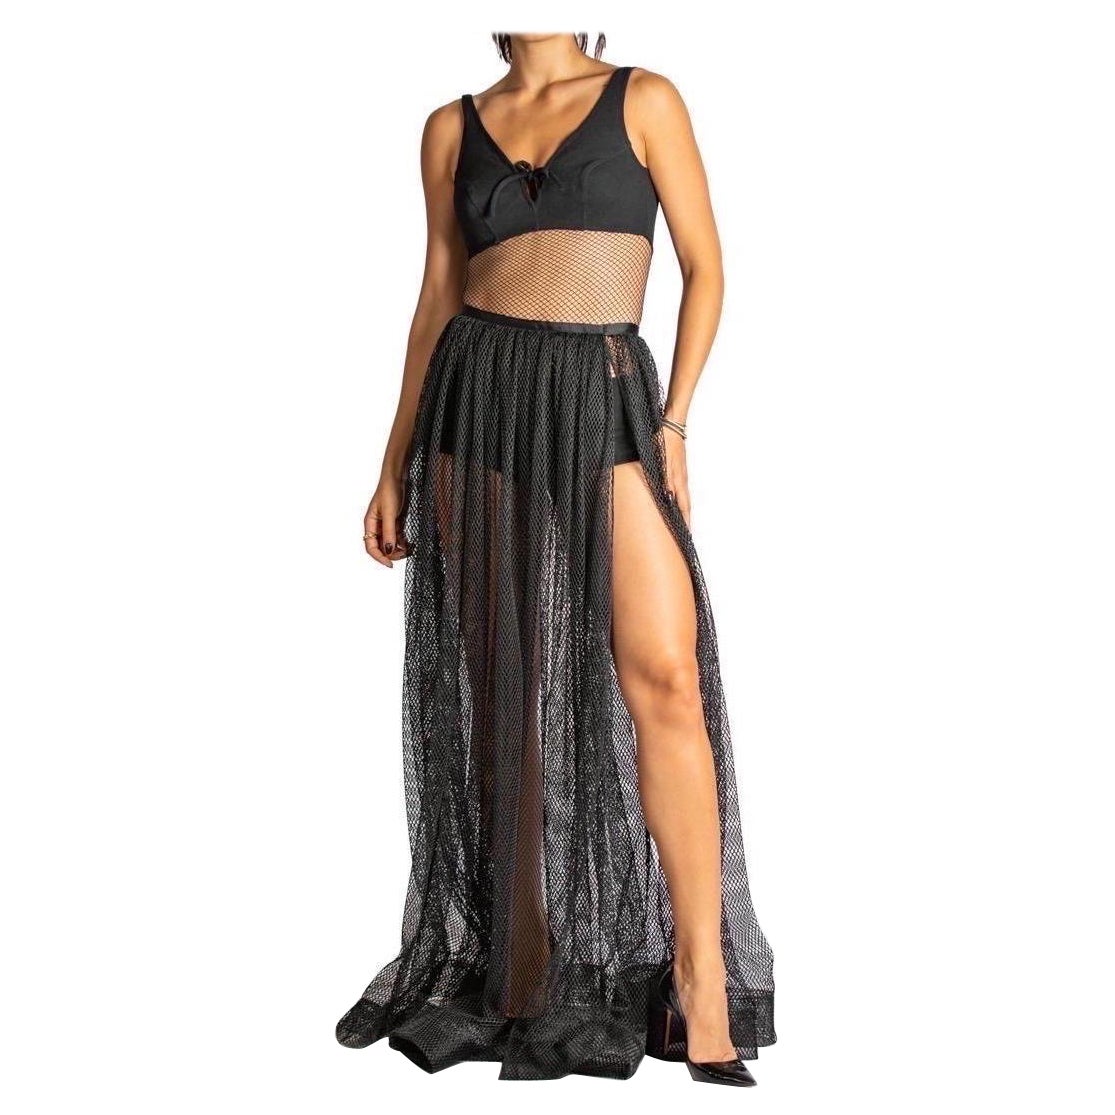 MORPHEW ATELIER Black Poly/Nylon Net Full Length Skirt With Slit For Sale